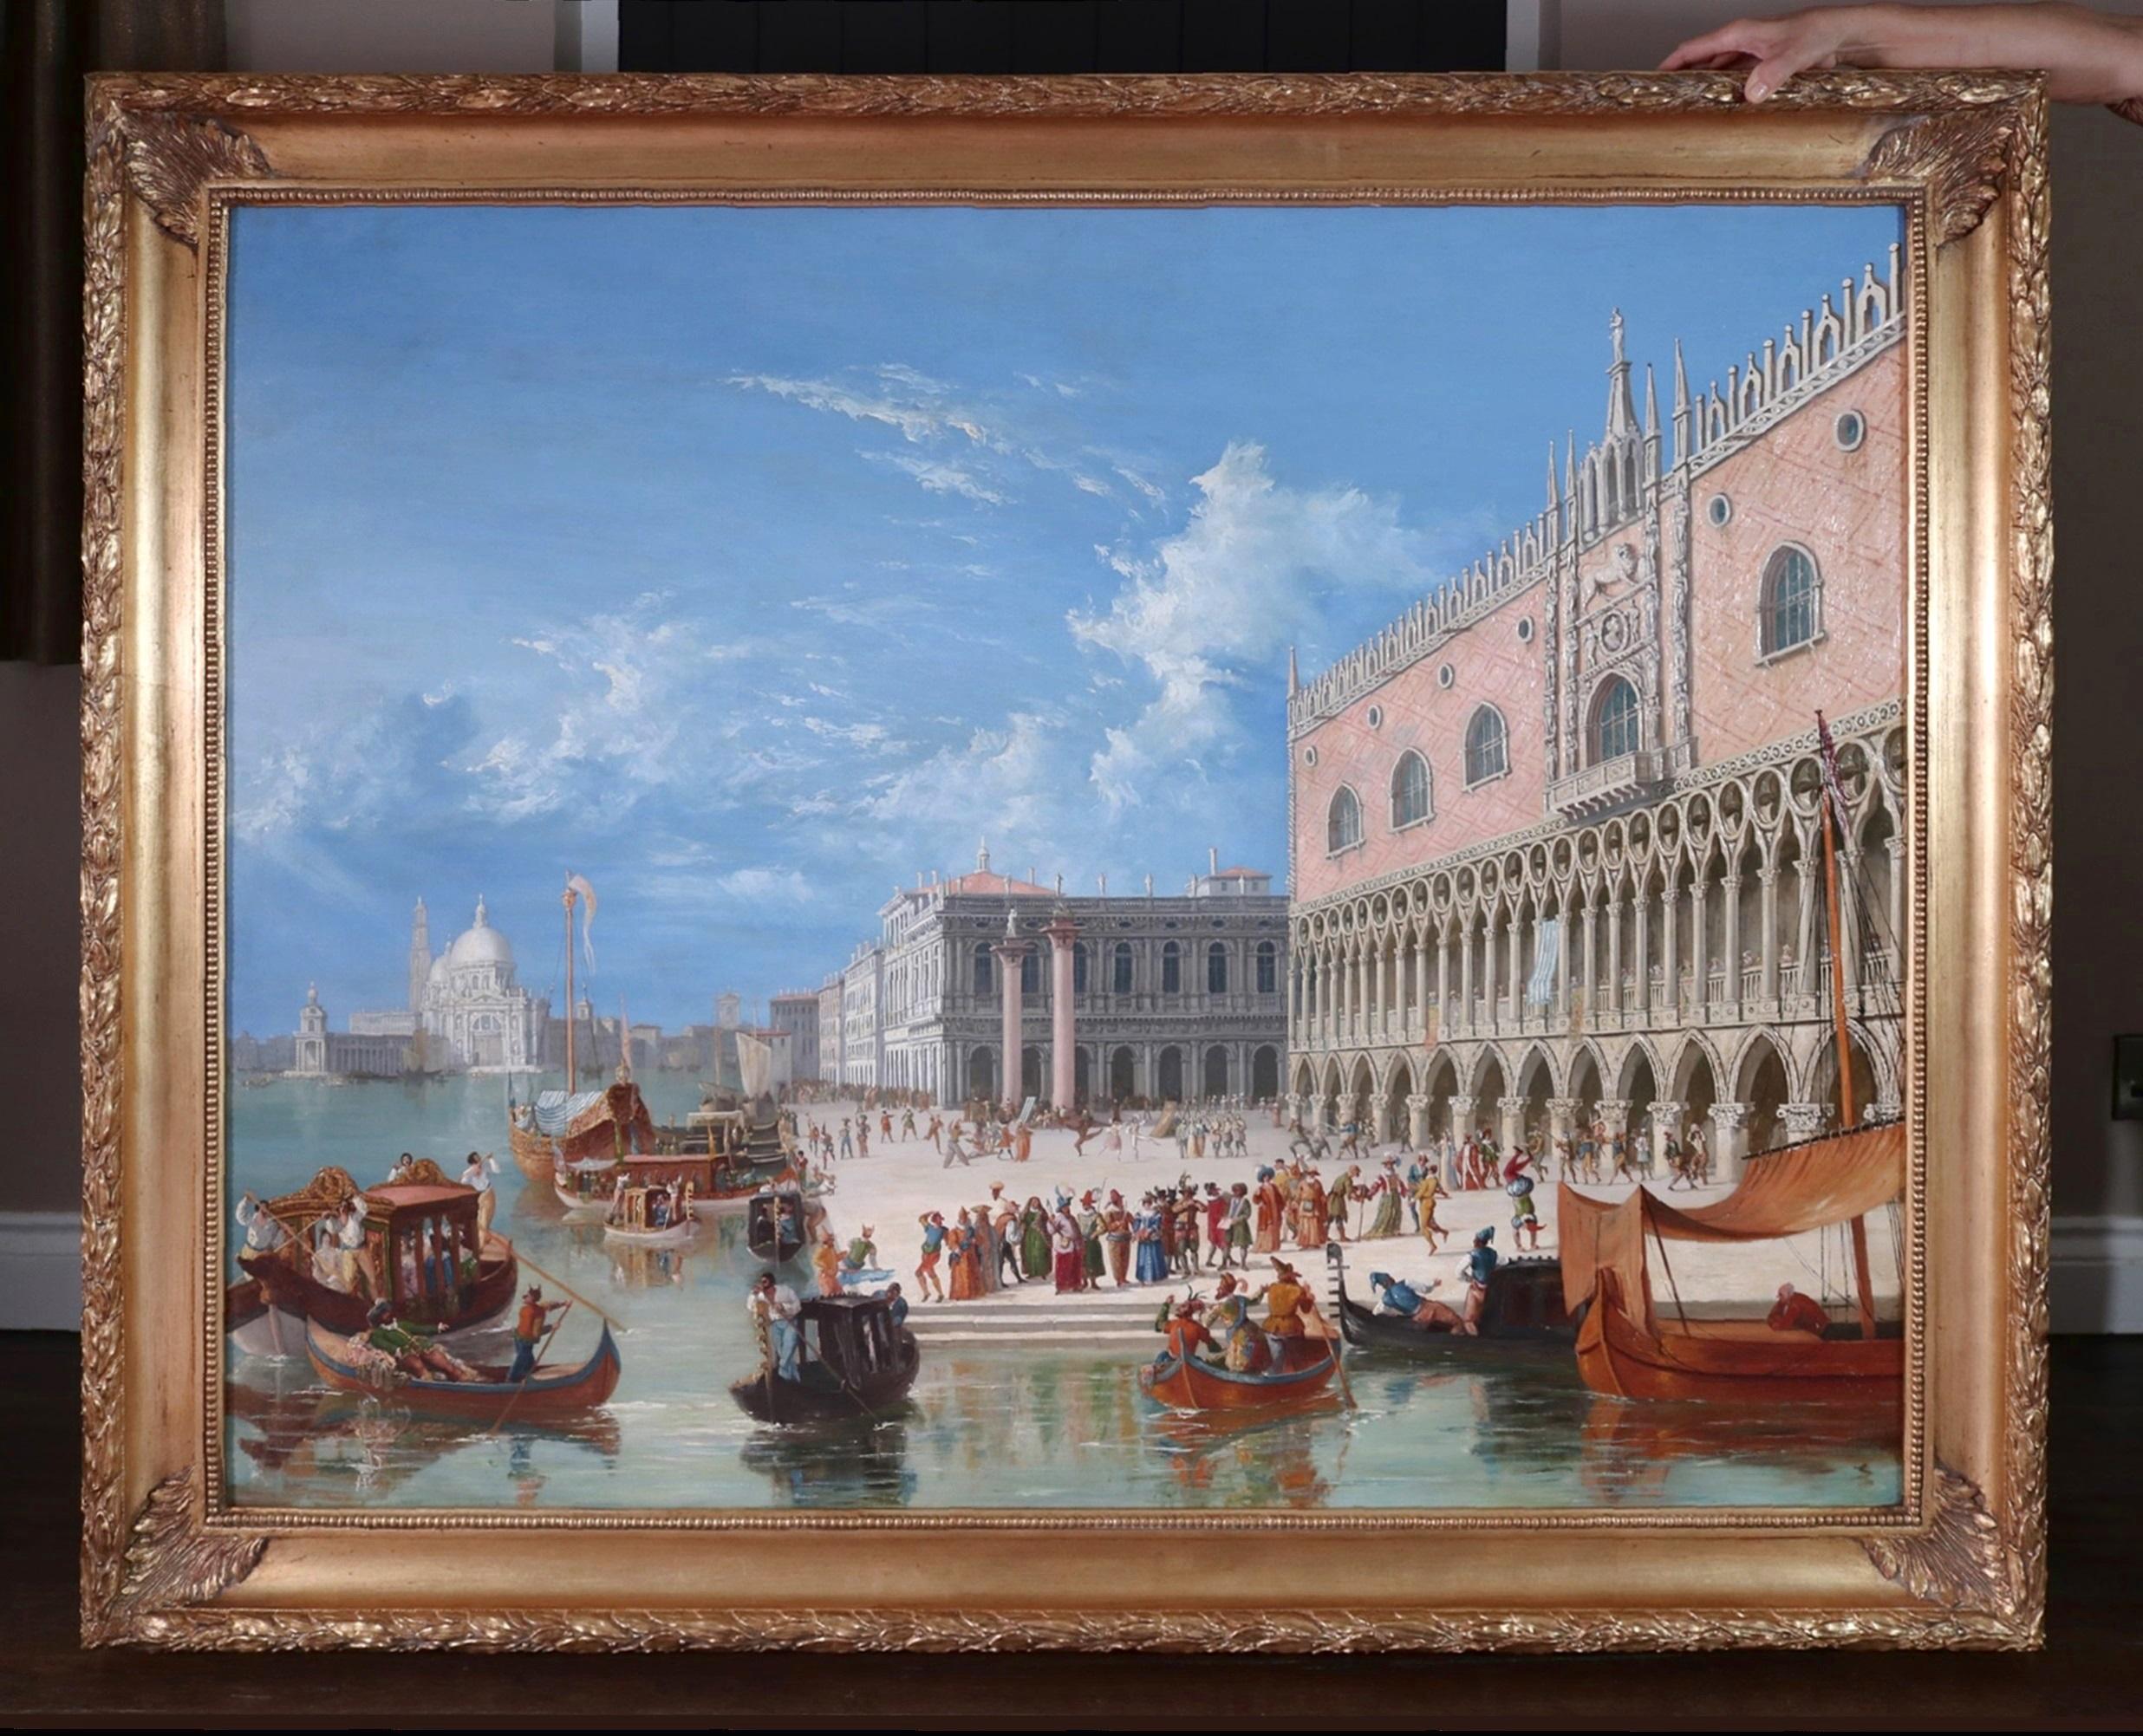 Figurative Painting James Holland - Carnevale di Venezia - Grande peinture à l'huile du 19e siècle représentant le carnaval de Venise, Italie